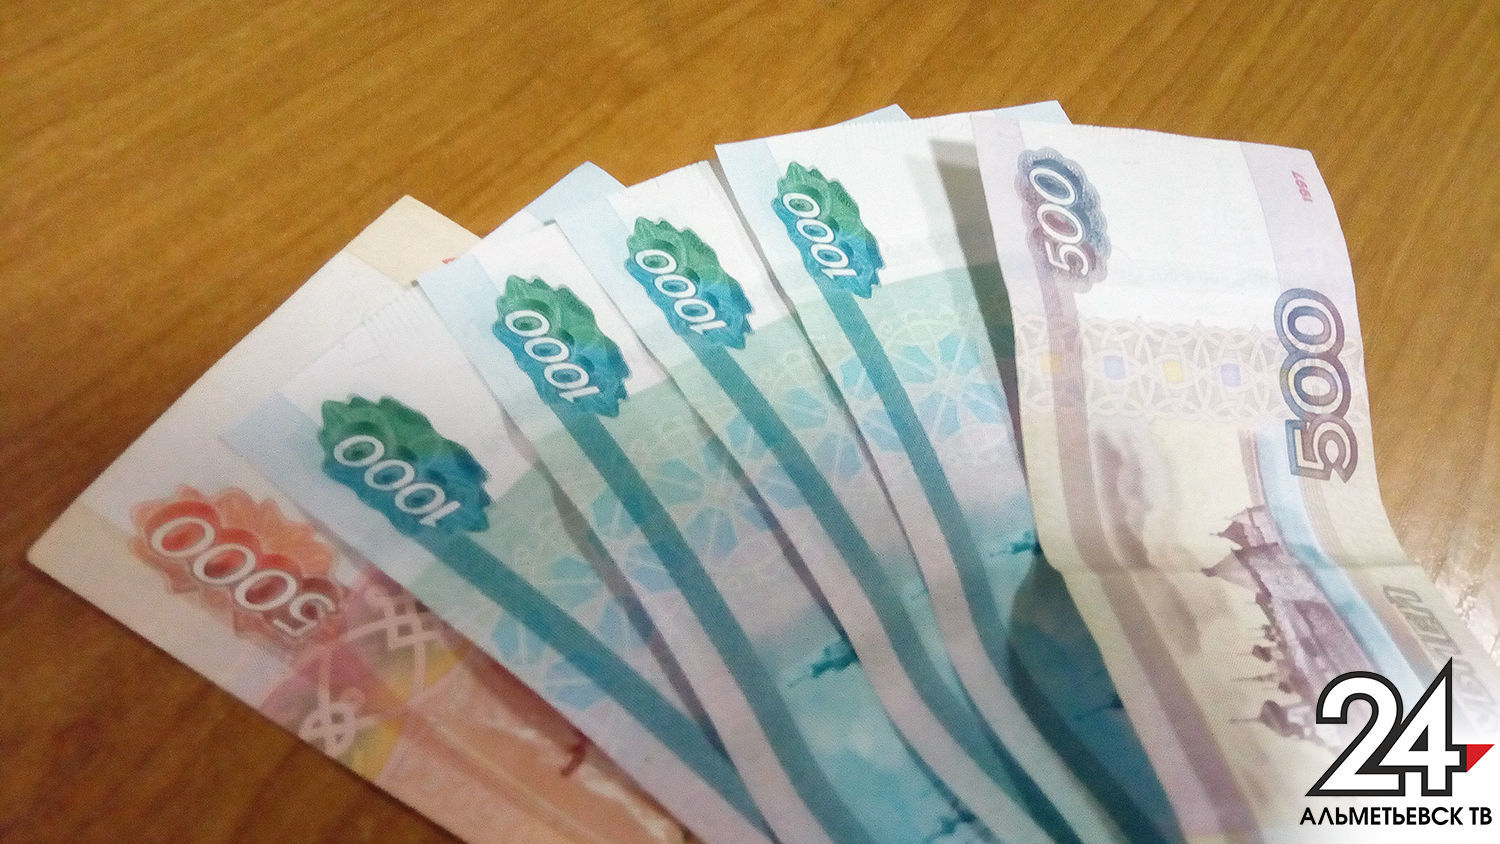 Прожиточный минимум в Татарстане на душу населения увеличился на 3% и составит 9 955 рублей